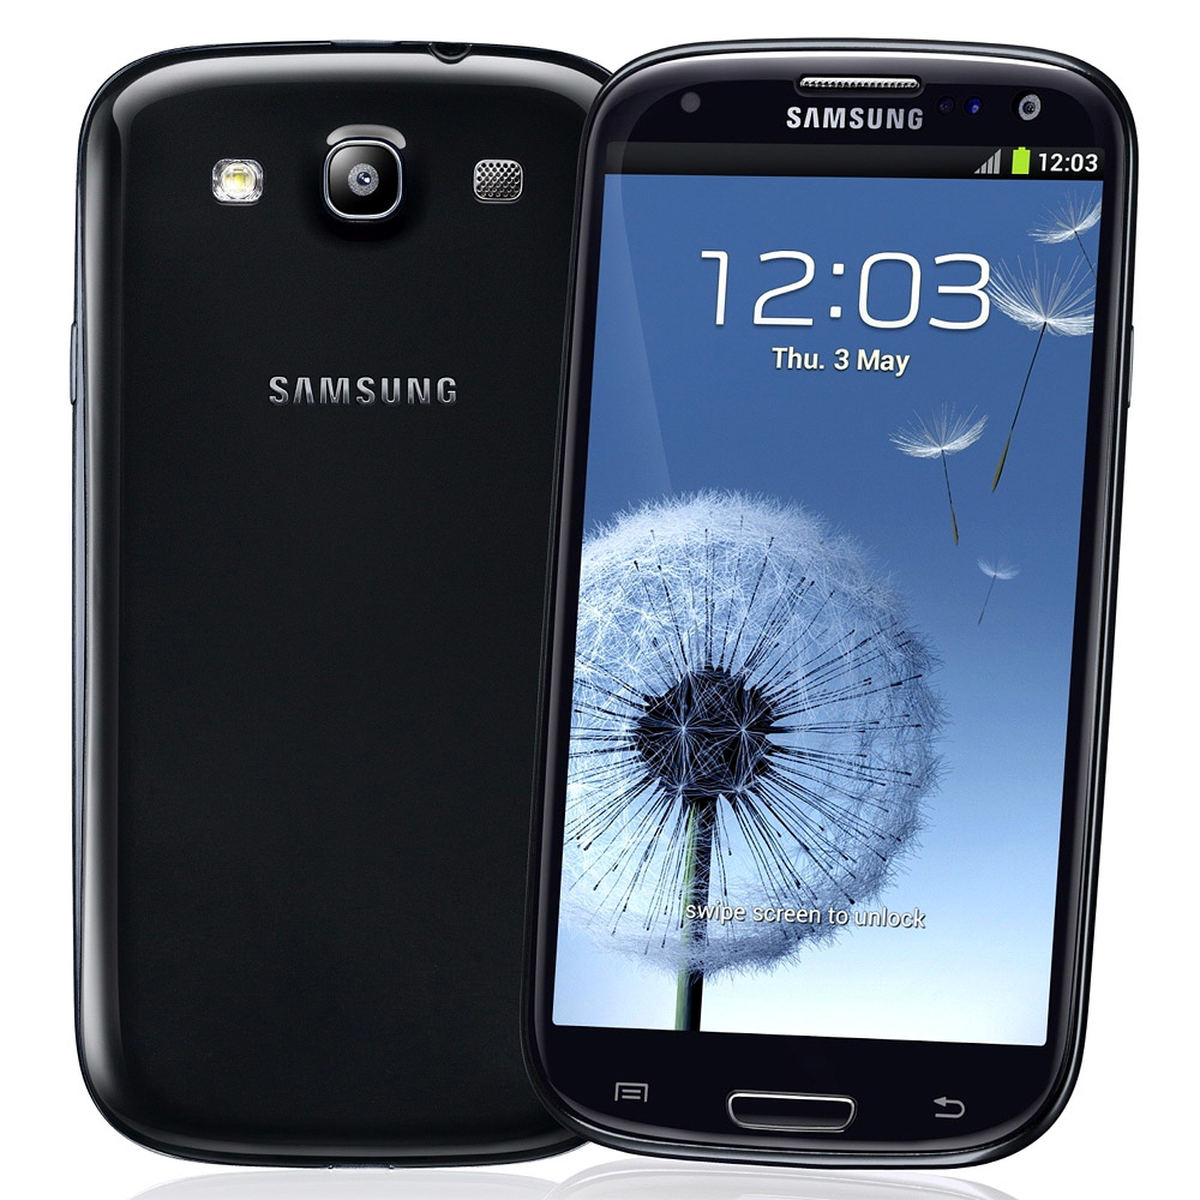 Samsung Galaxy S3 : Caratteristiche e Opinioni | JuzaPhoto